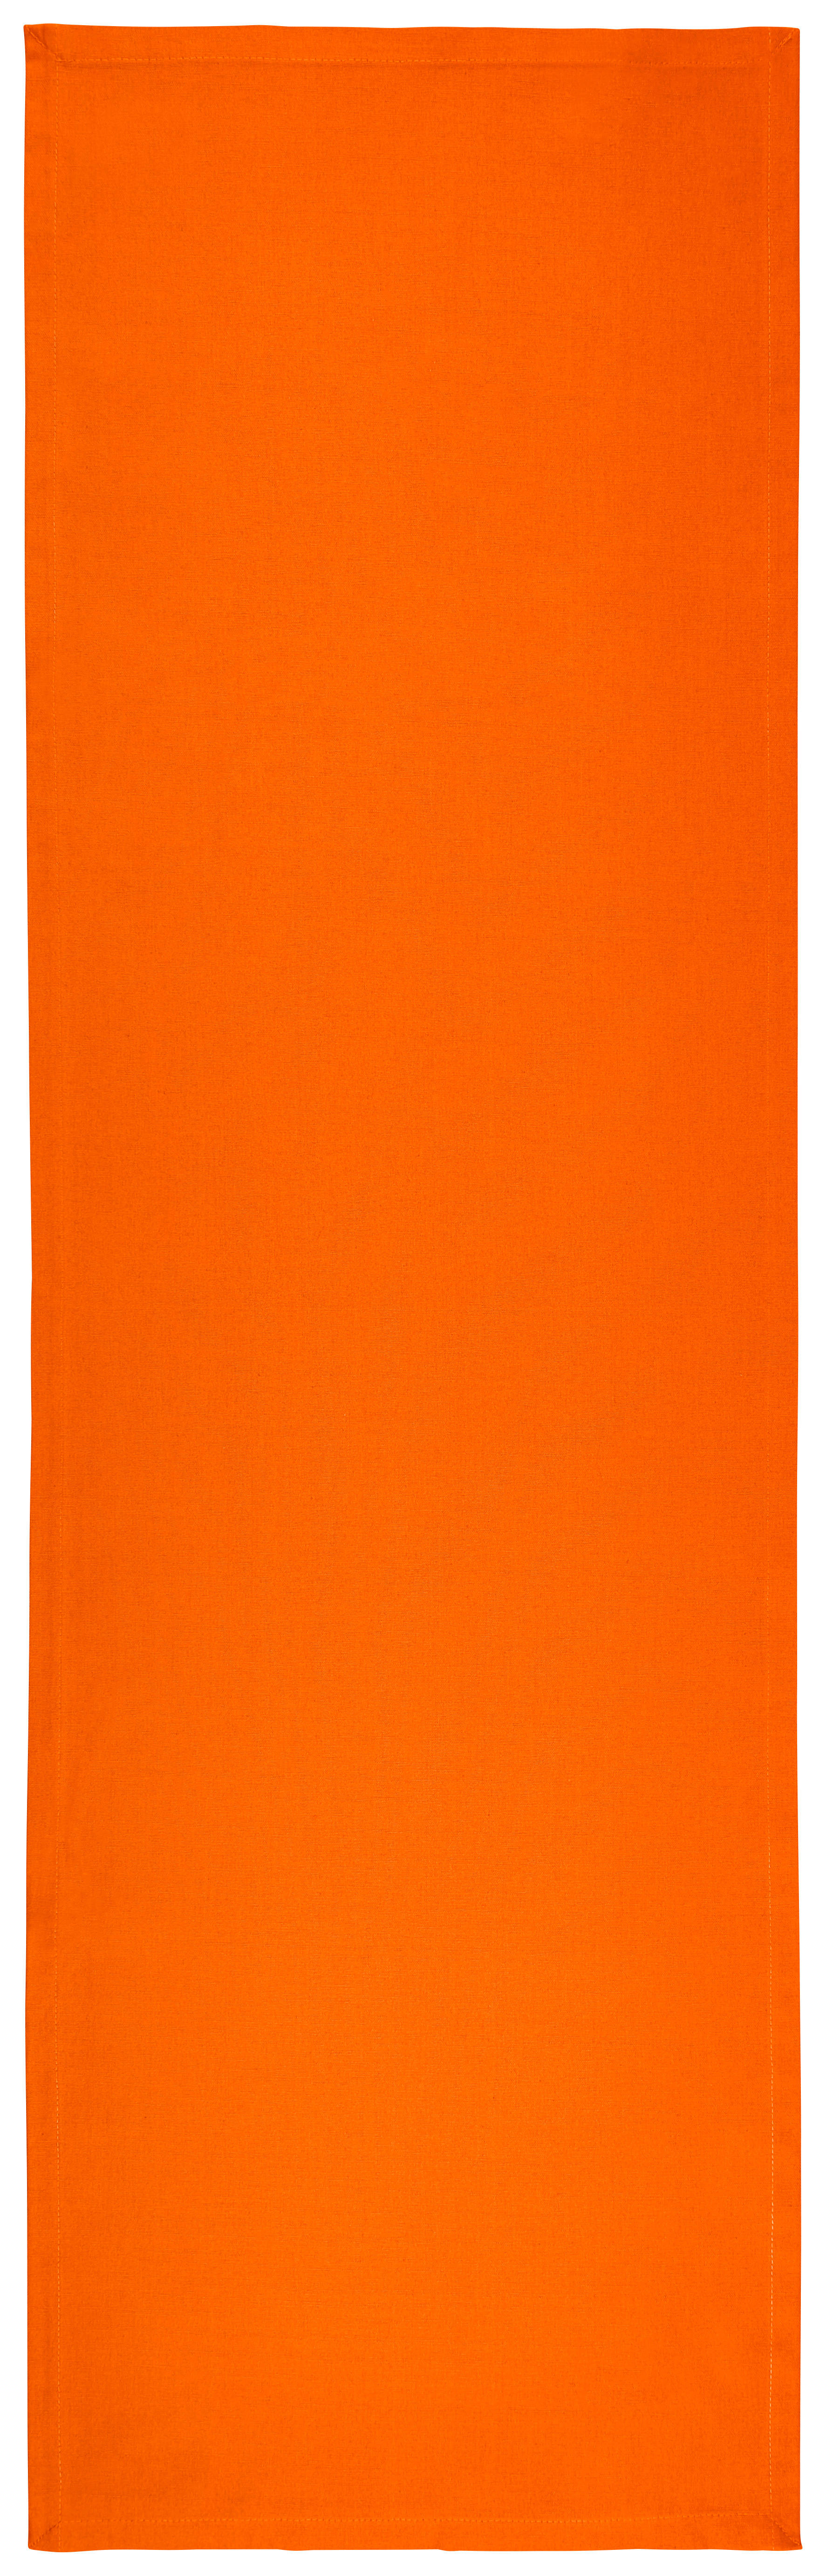 Novel BĚHOUN NA STŮL, 45/150 cm, oranžová - oranžová